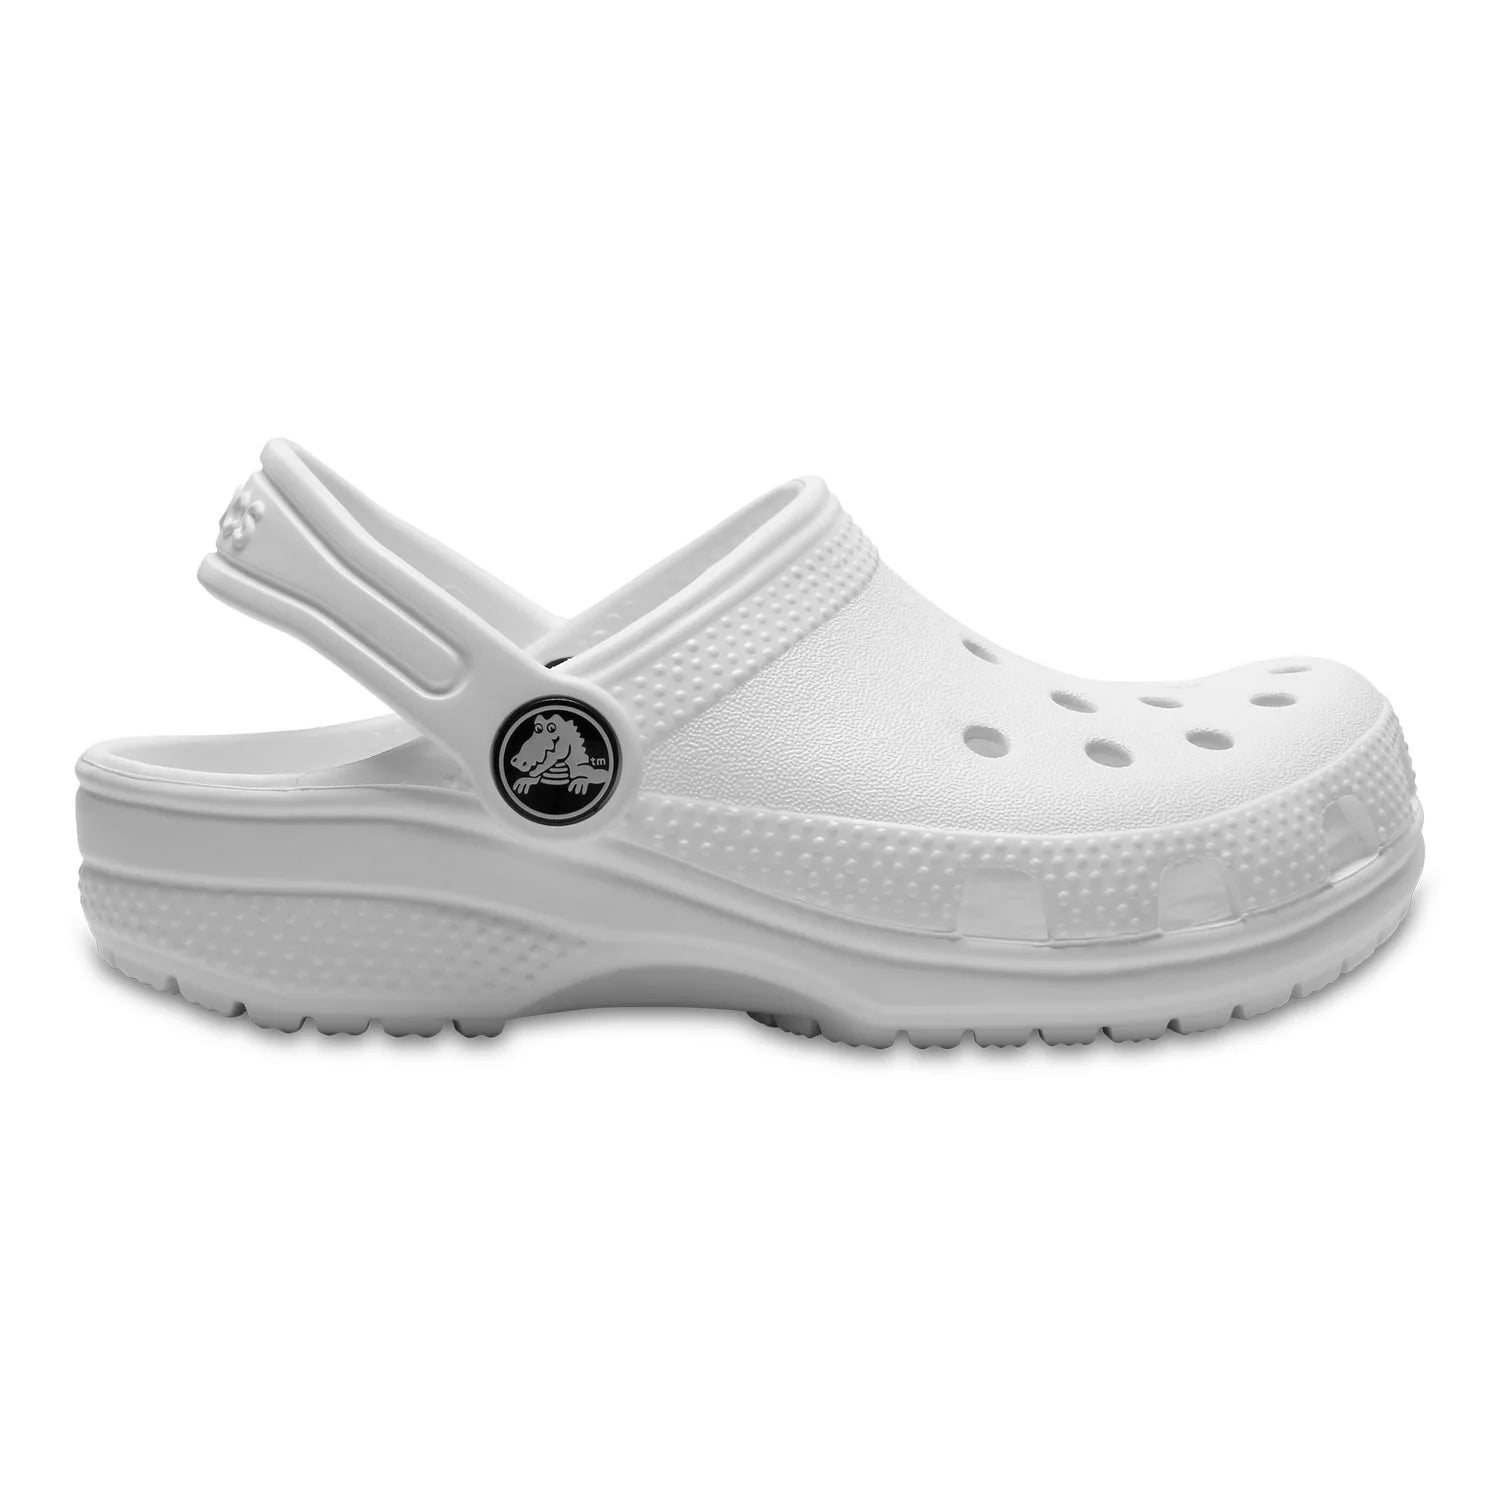 Crocs Classic Clog Sandal Toddler